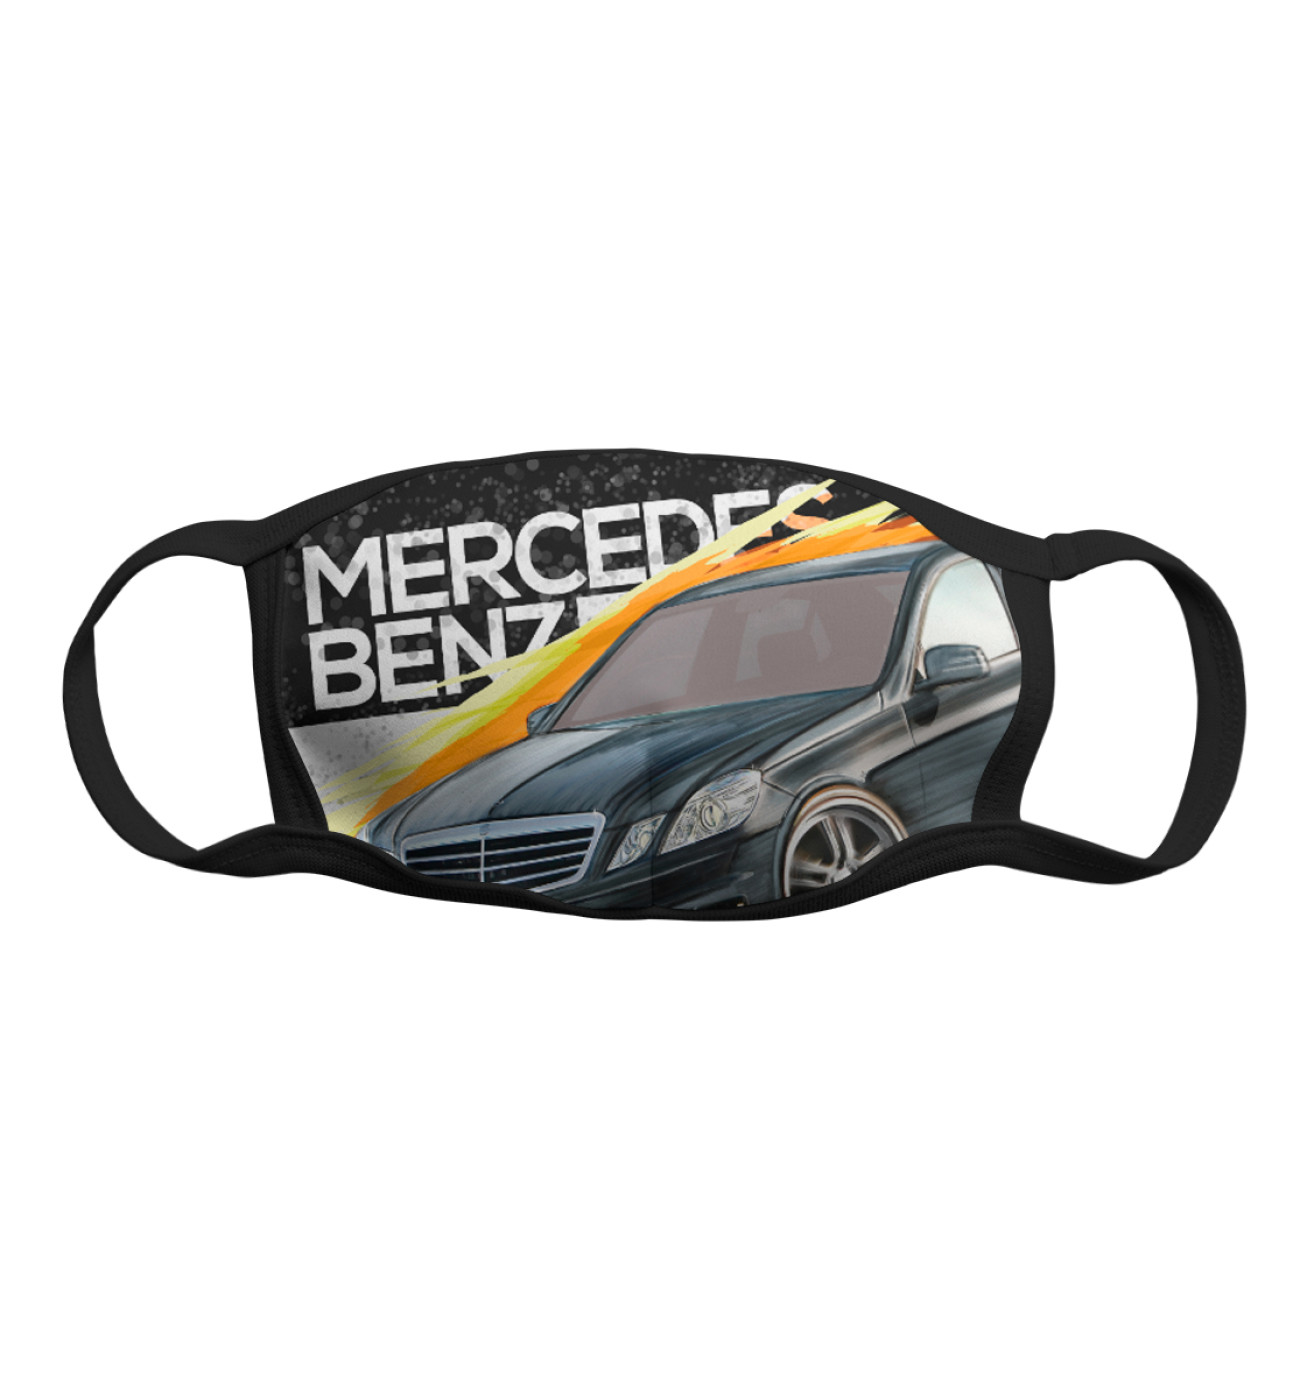 Мужская Маска Mercedes-benz E-class, артикул: MER-608463-msk-2